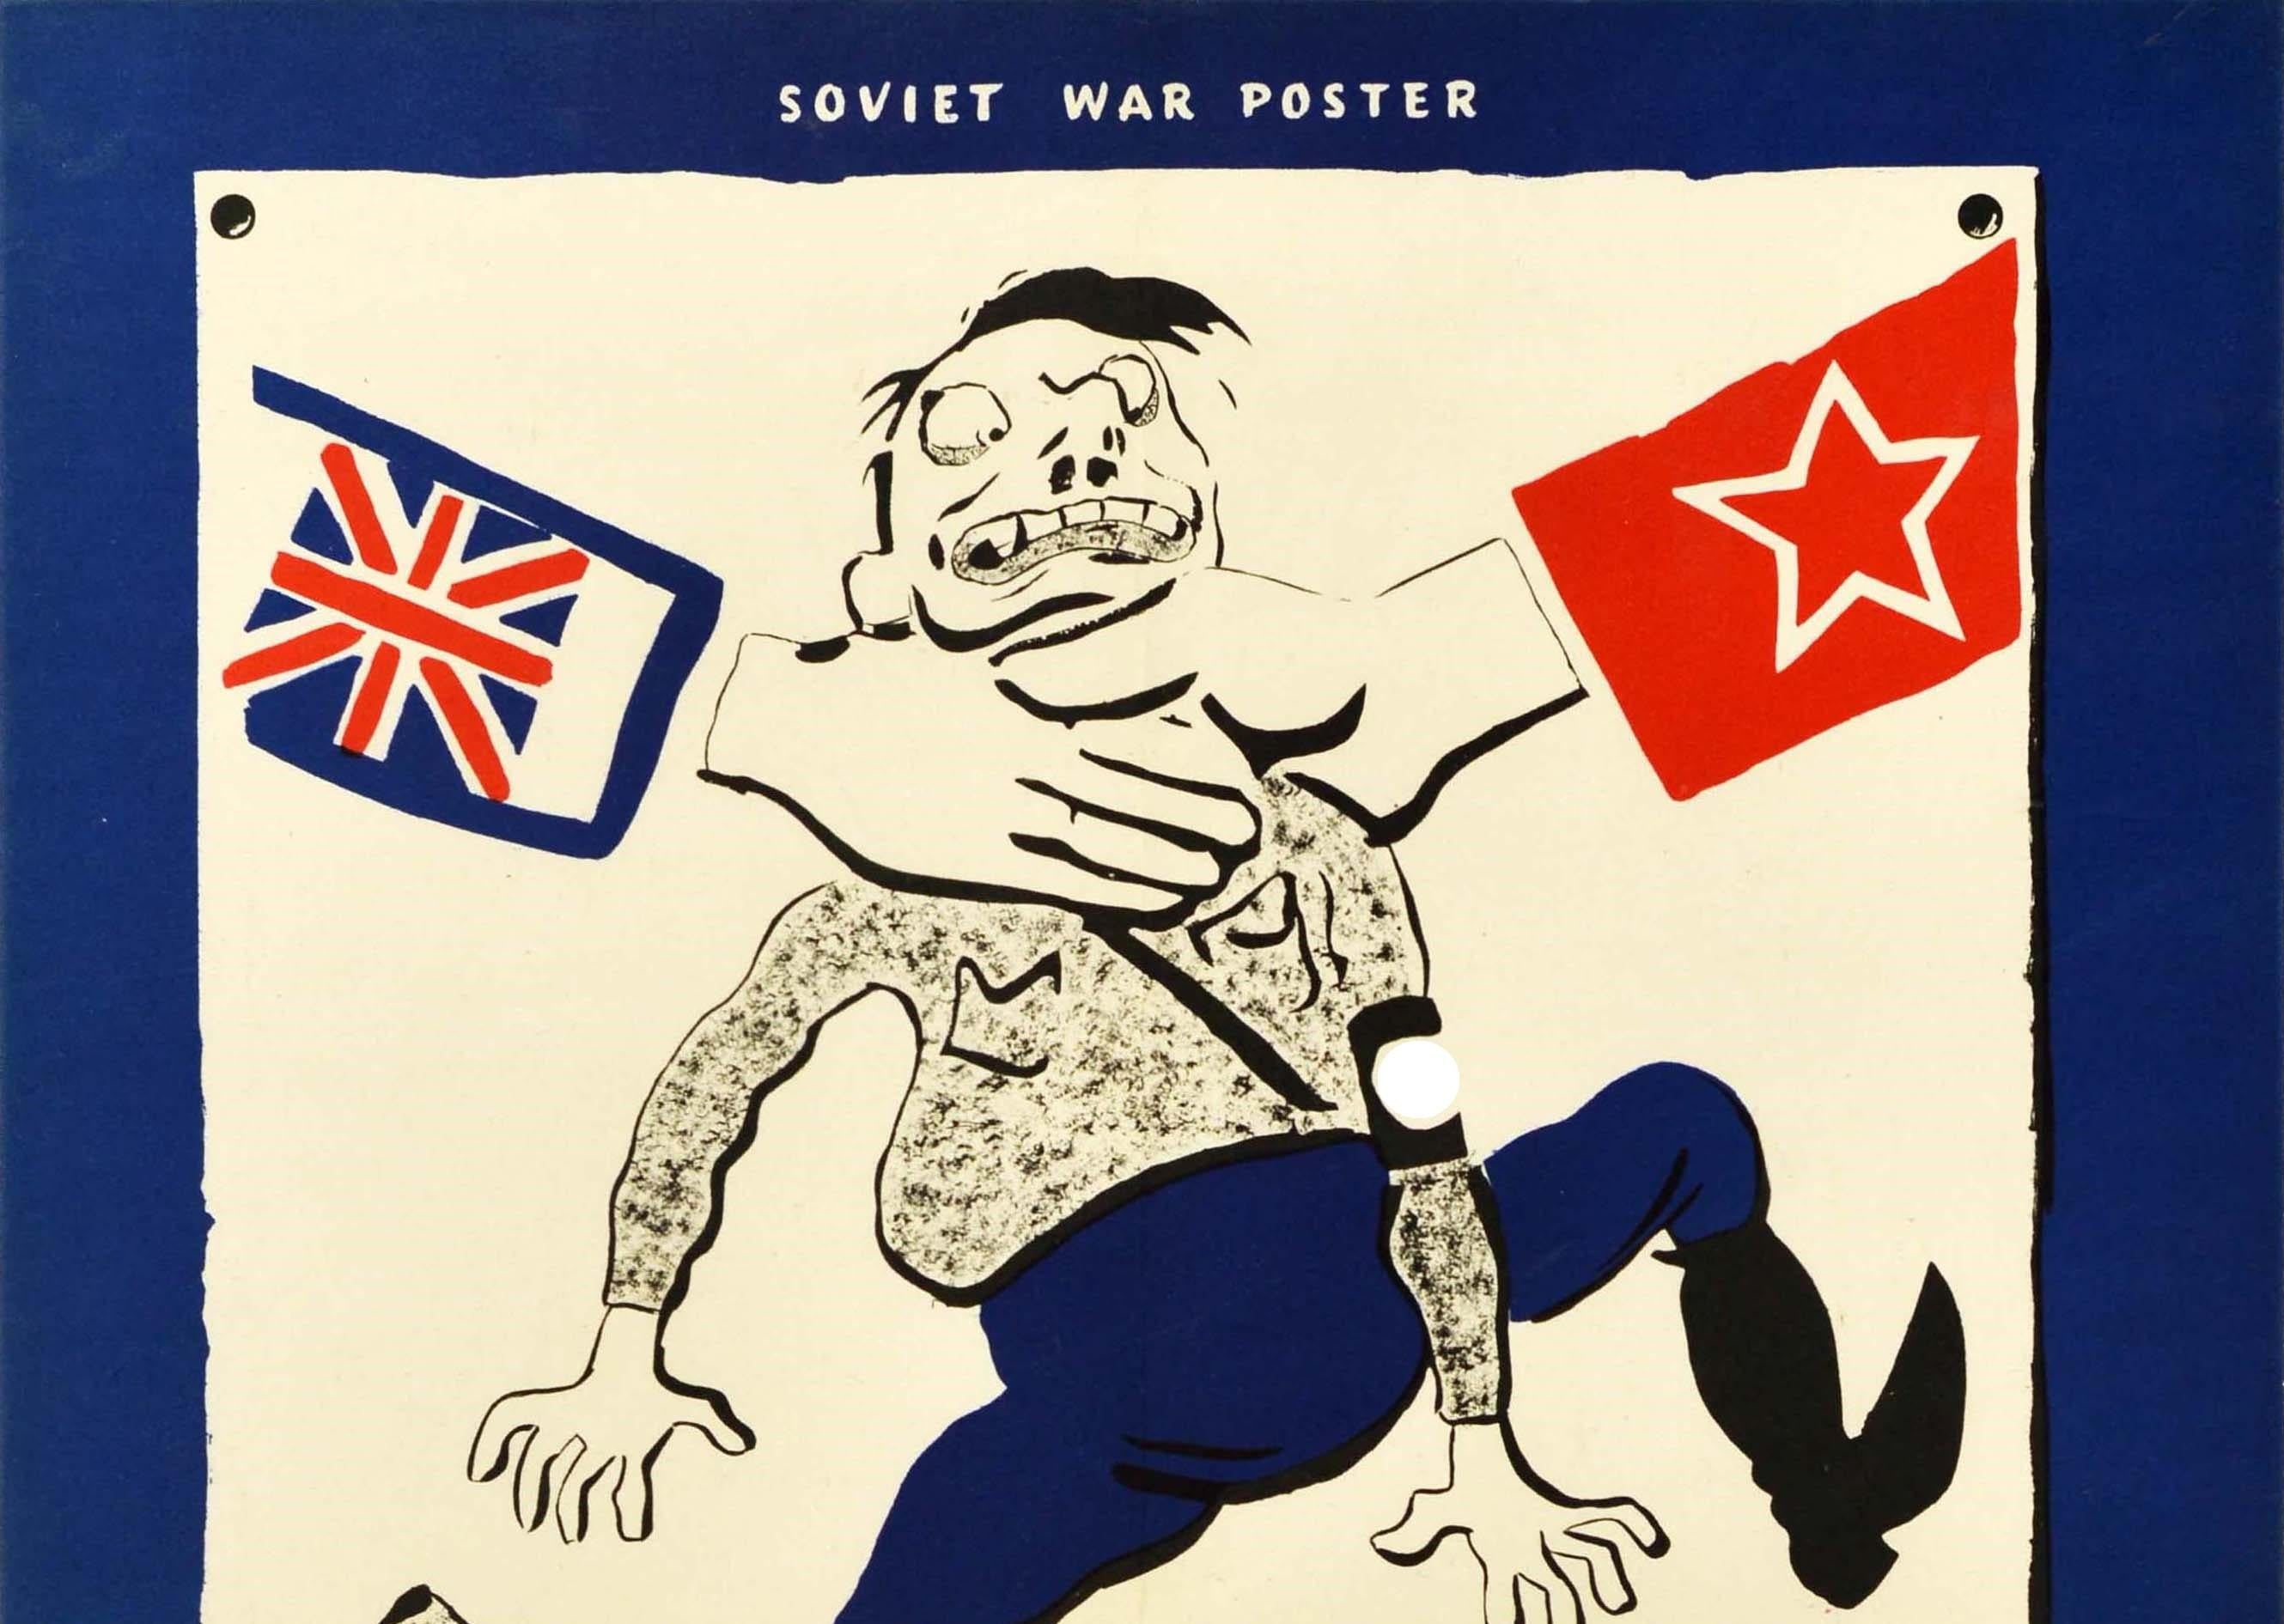 Original Vintage World War Two Propagandaposter - Soviet War Poster Rush British arms to Russian hands - mit einem Cartoon-Stil Karikatur Illustration von Nikolai Radlov (1889-1942) zeigt die Nazi-Deutschland-Führer Adolf Hitler trägt Uniform und